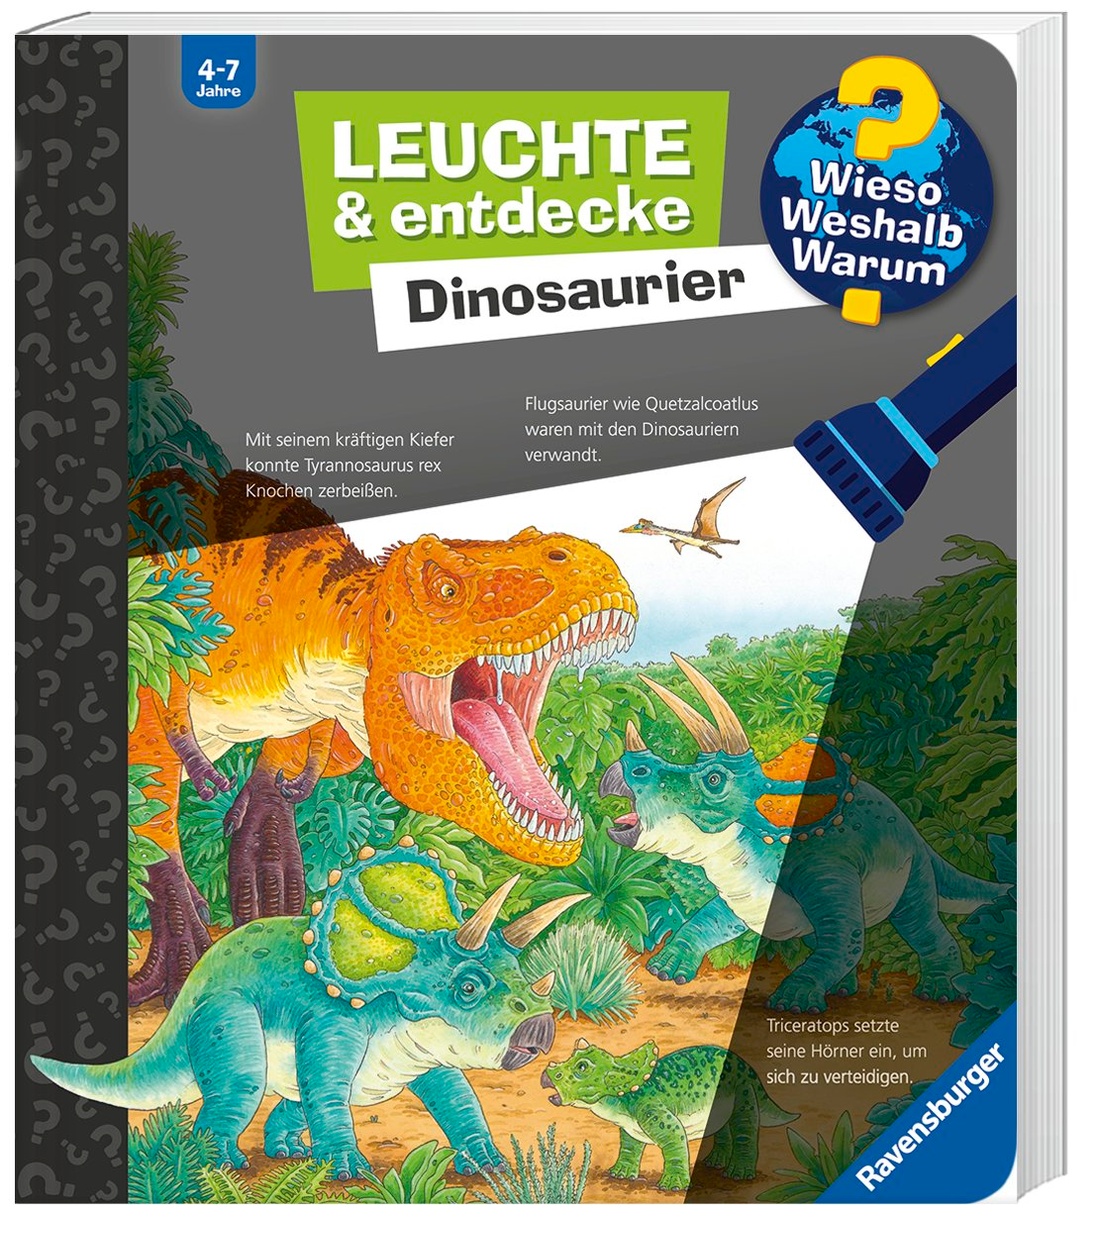 https://i.weltbild.de/p/wieso-weshalb-warum-leuchte-und-entdecke-dinosaurier-346678620.jpg?v=1&wp=_max